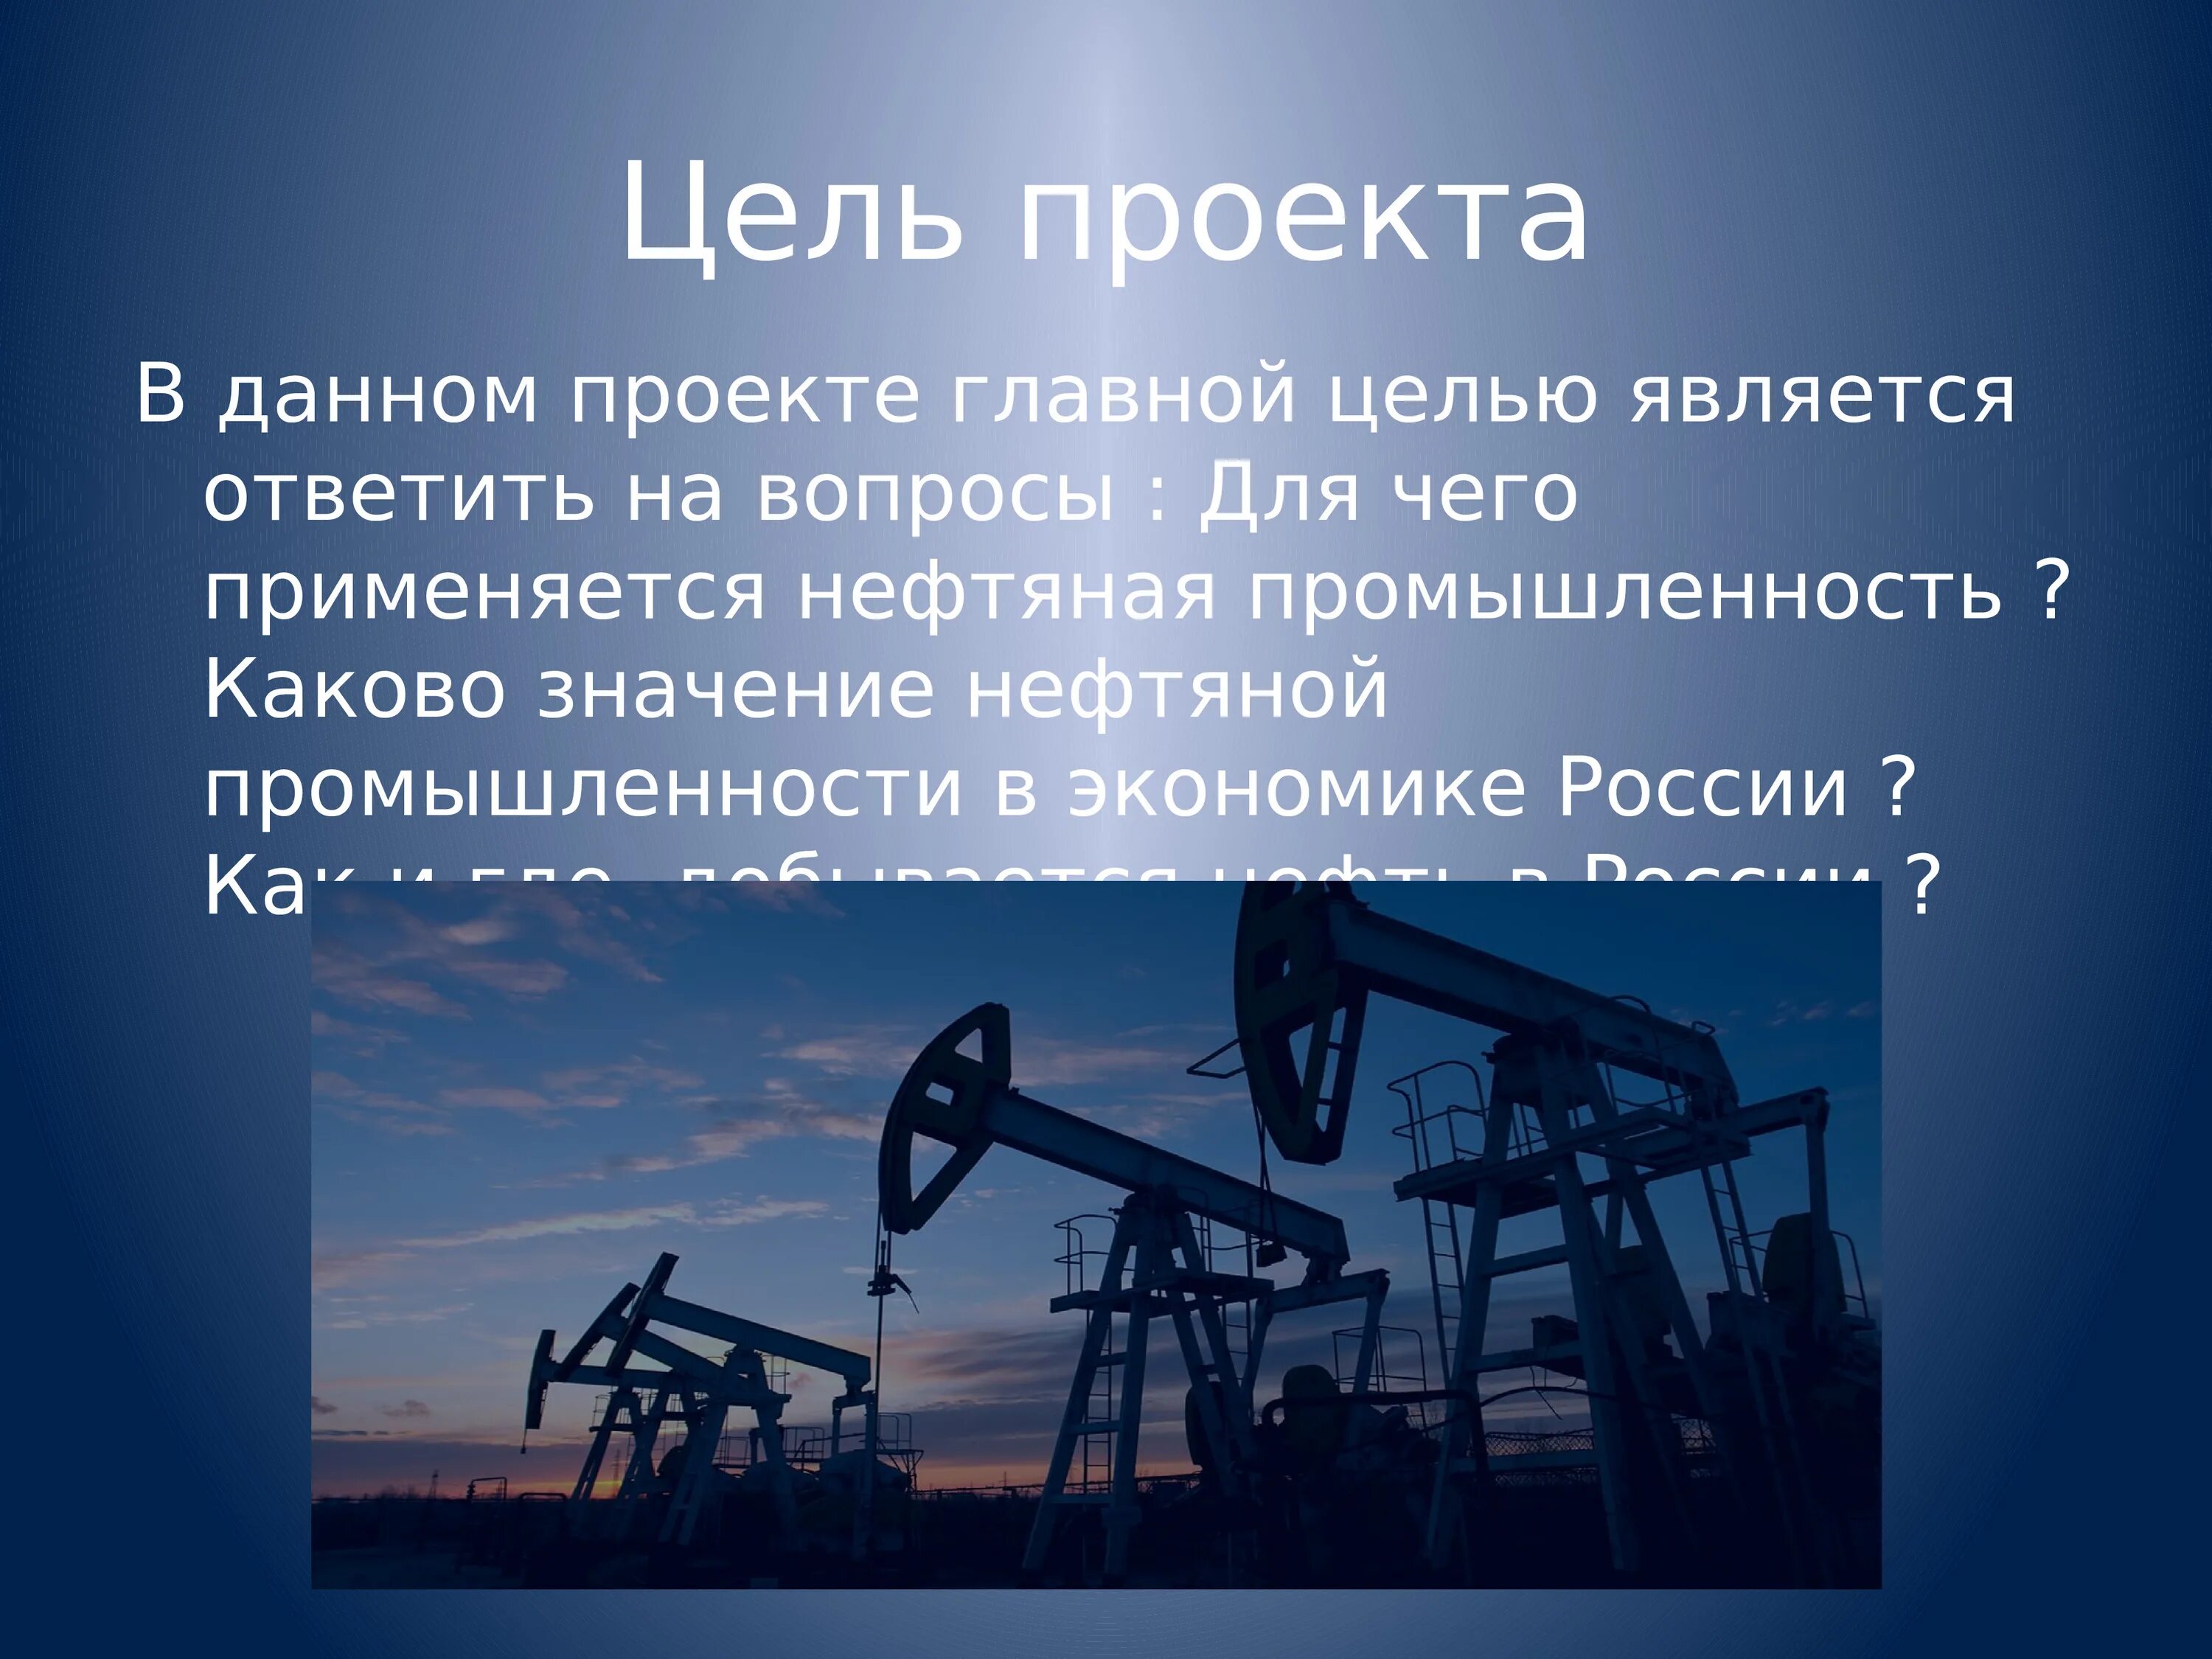 Проектная нефть и газ. Нефтяная промышленность России. Нефтяная промышленность презентация. Нефтяная промышленность Росси. Нефтяная промышленность цели проекта.